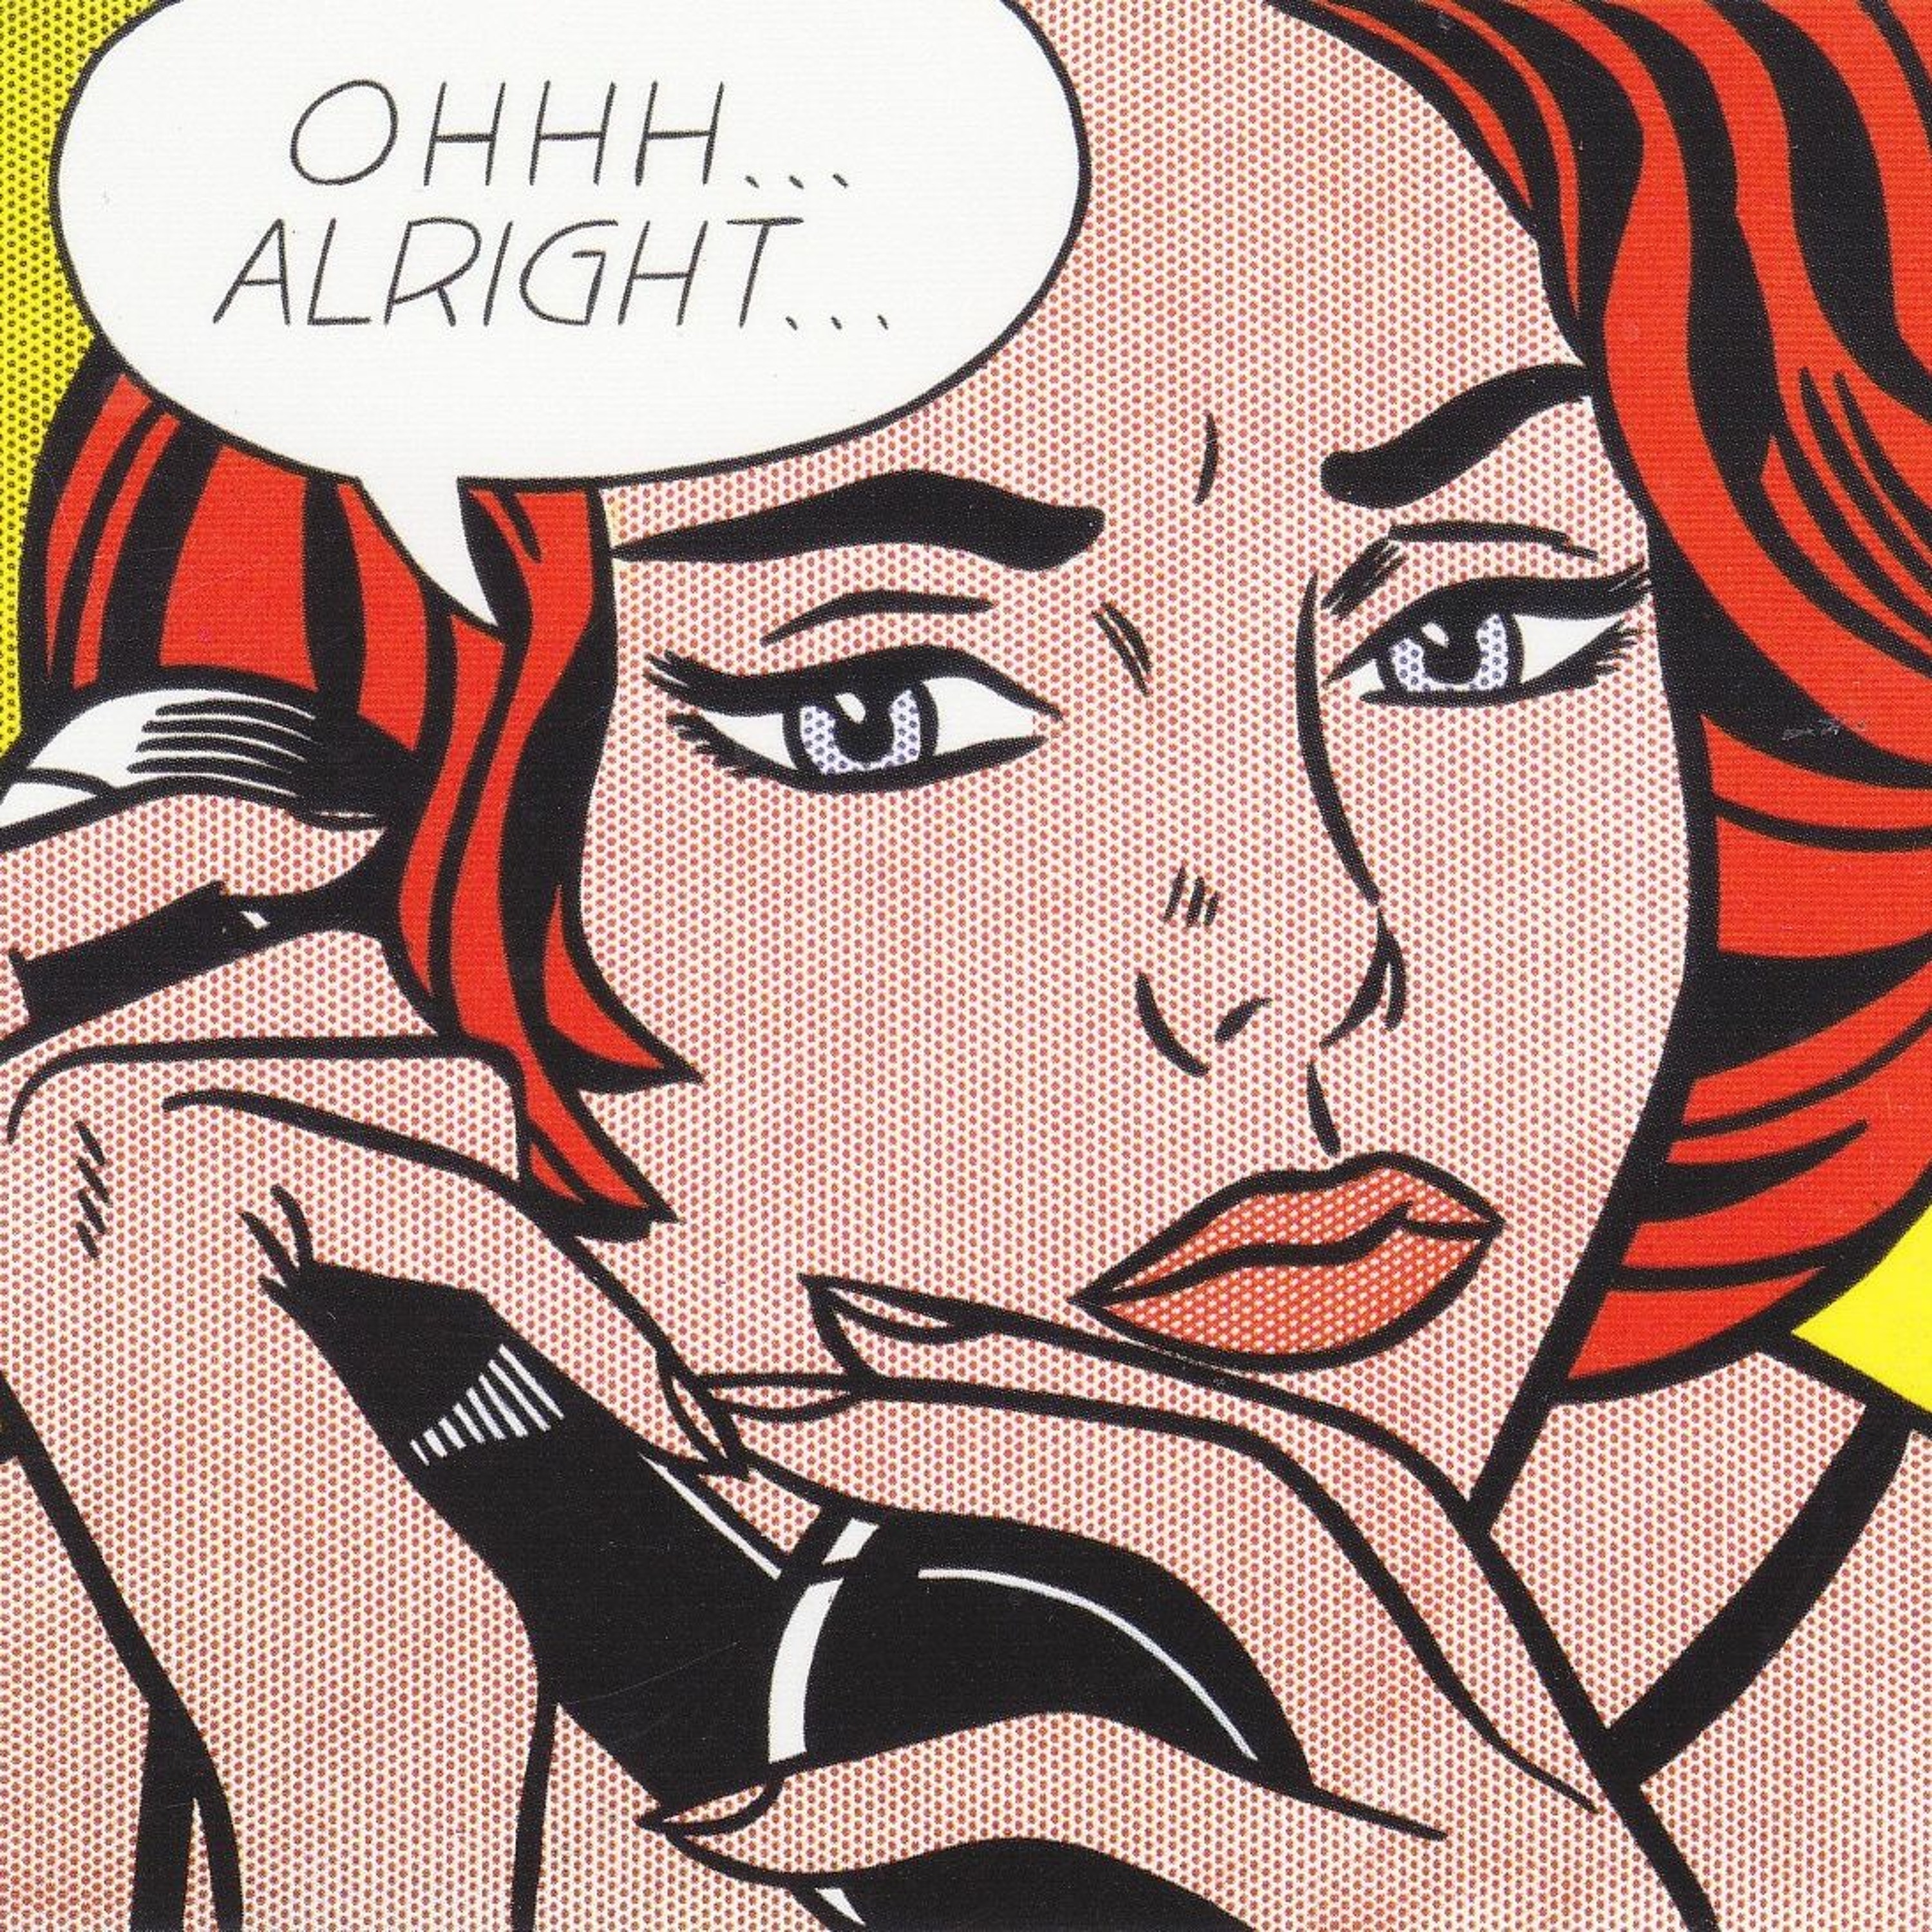 Ep. 27 - Roy Lichtenstein's "Ohhh... Alright..." (1964)